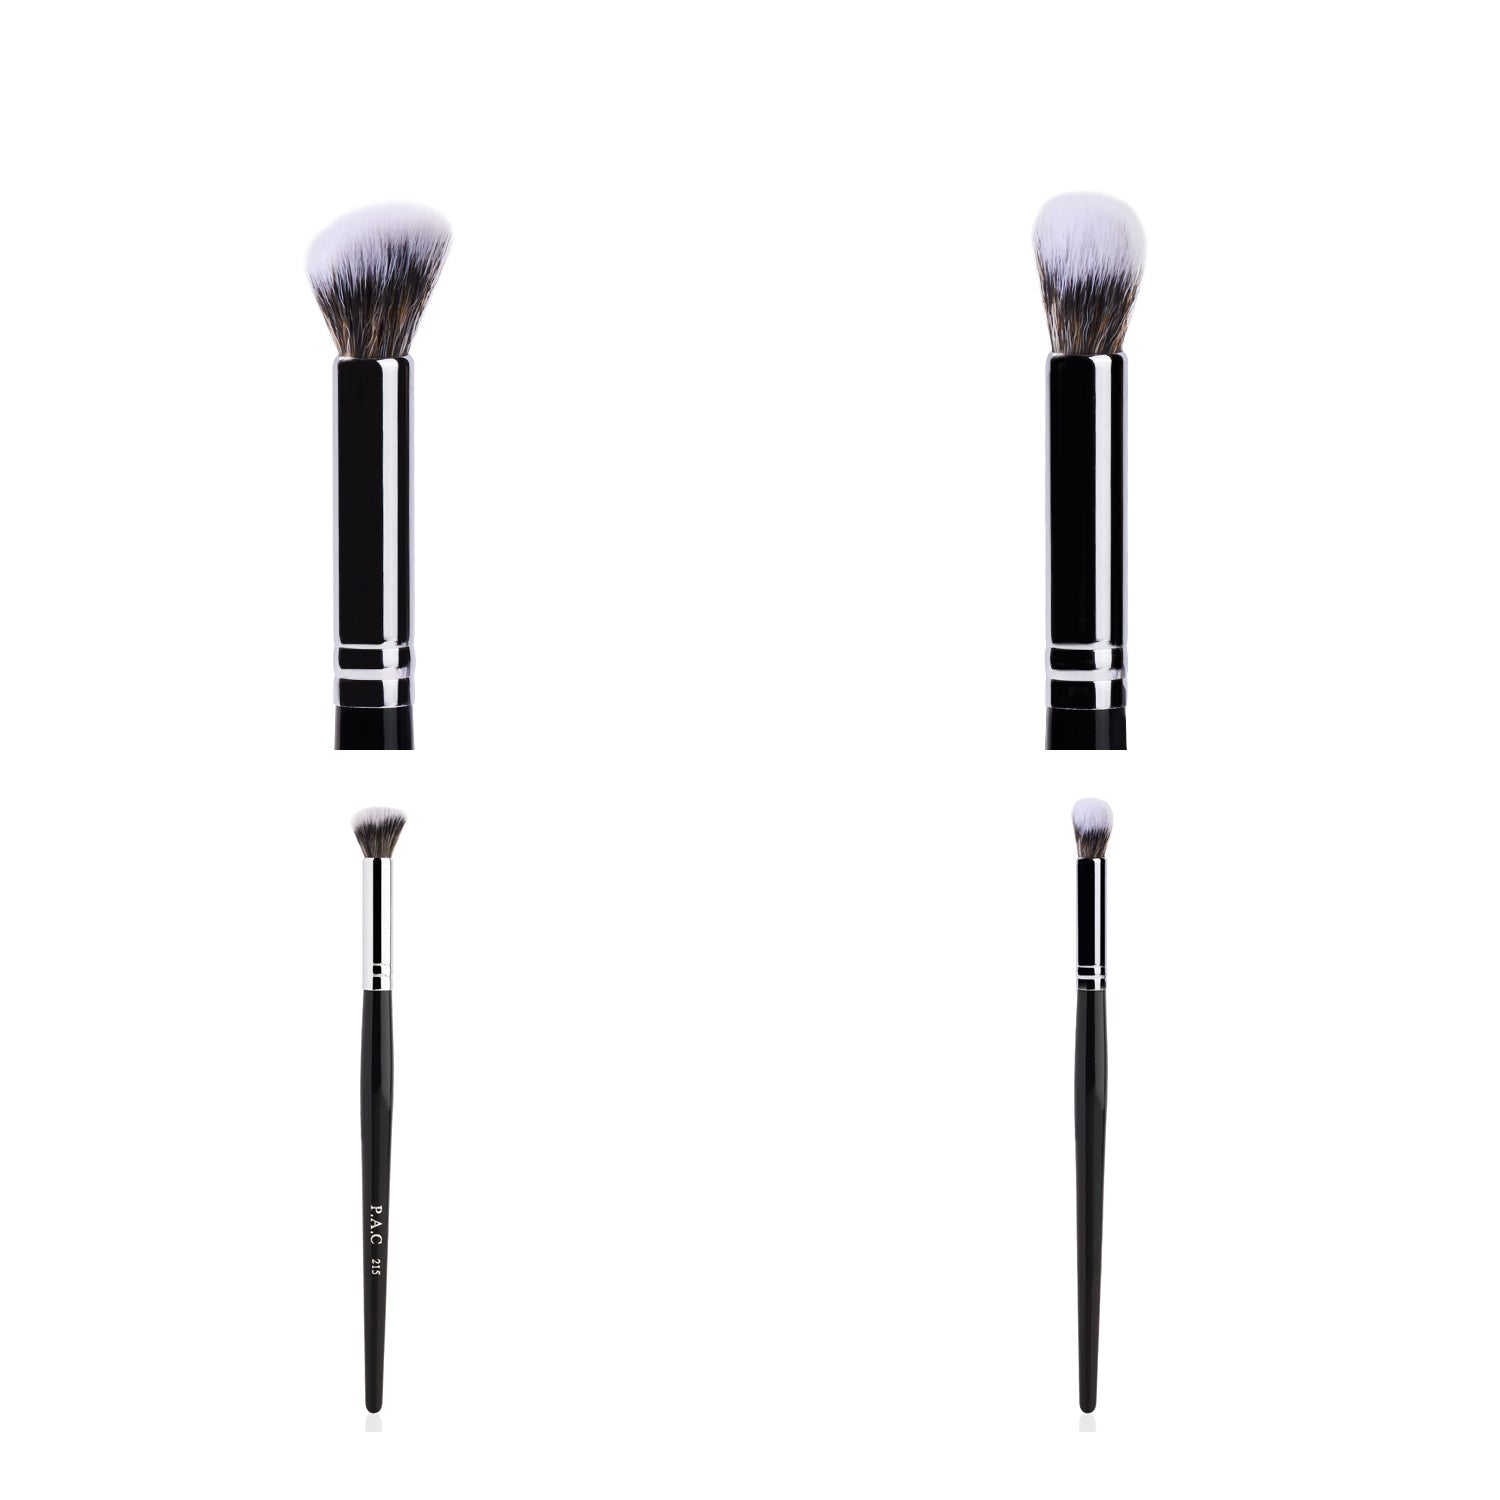 PAC Cosmetics Concealer Brush 215